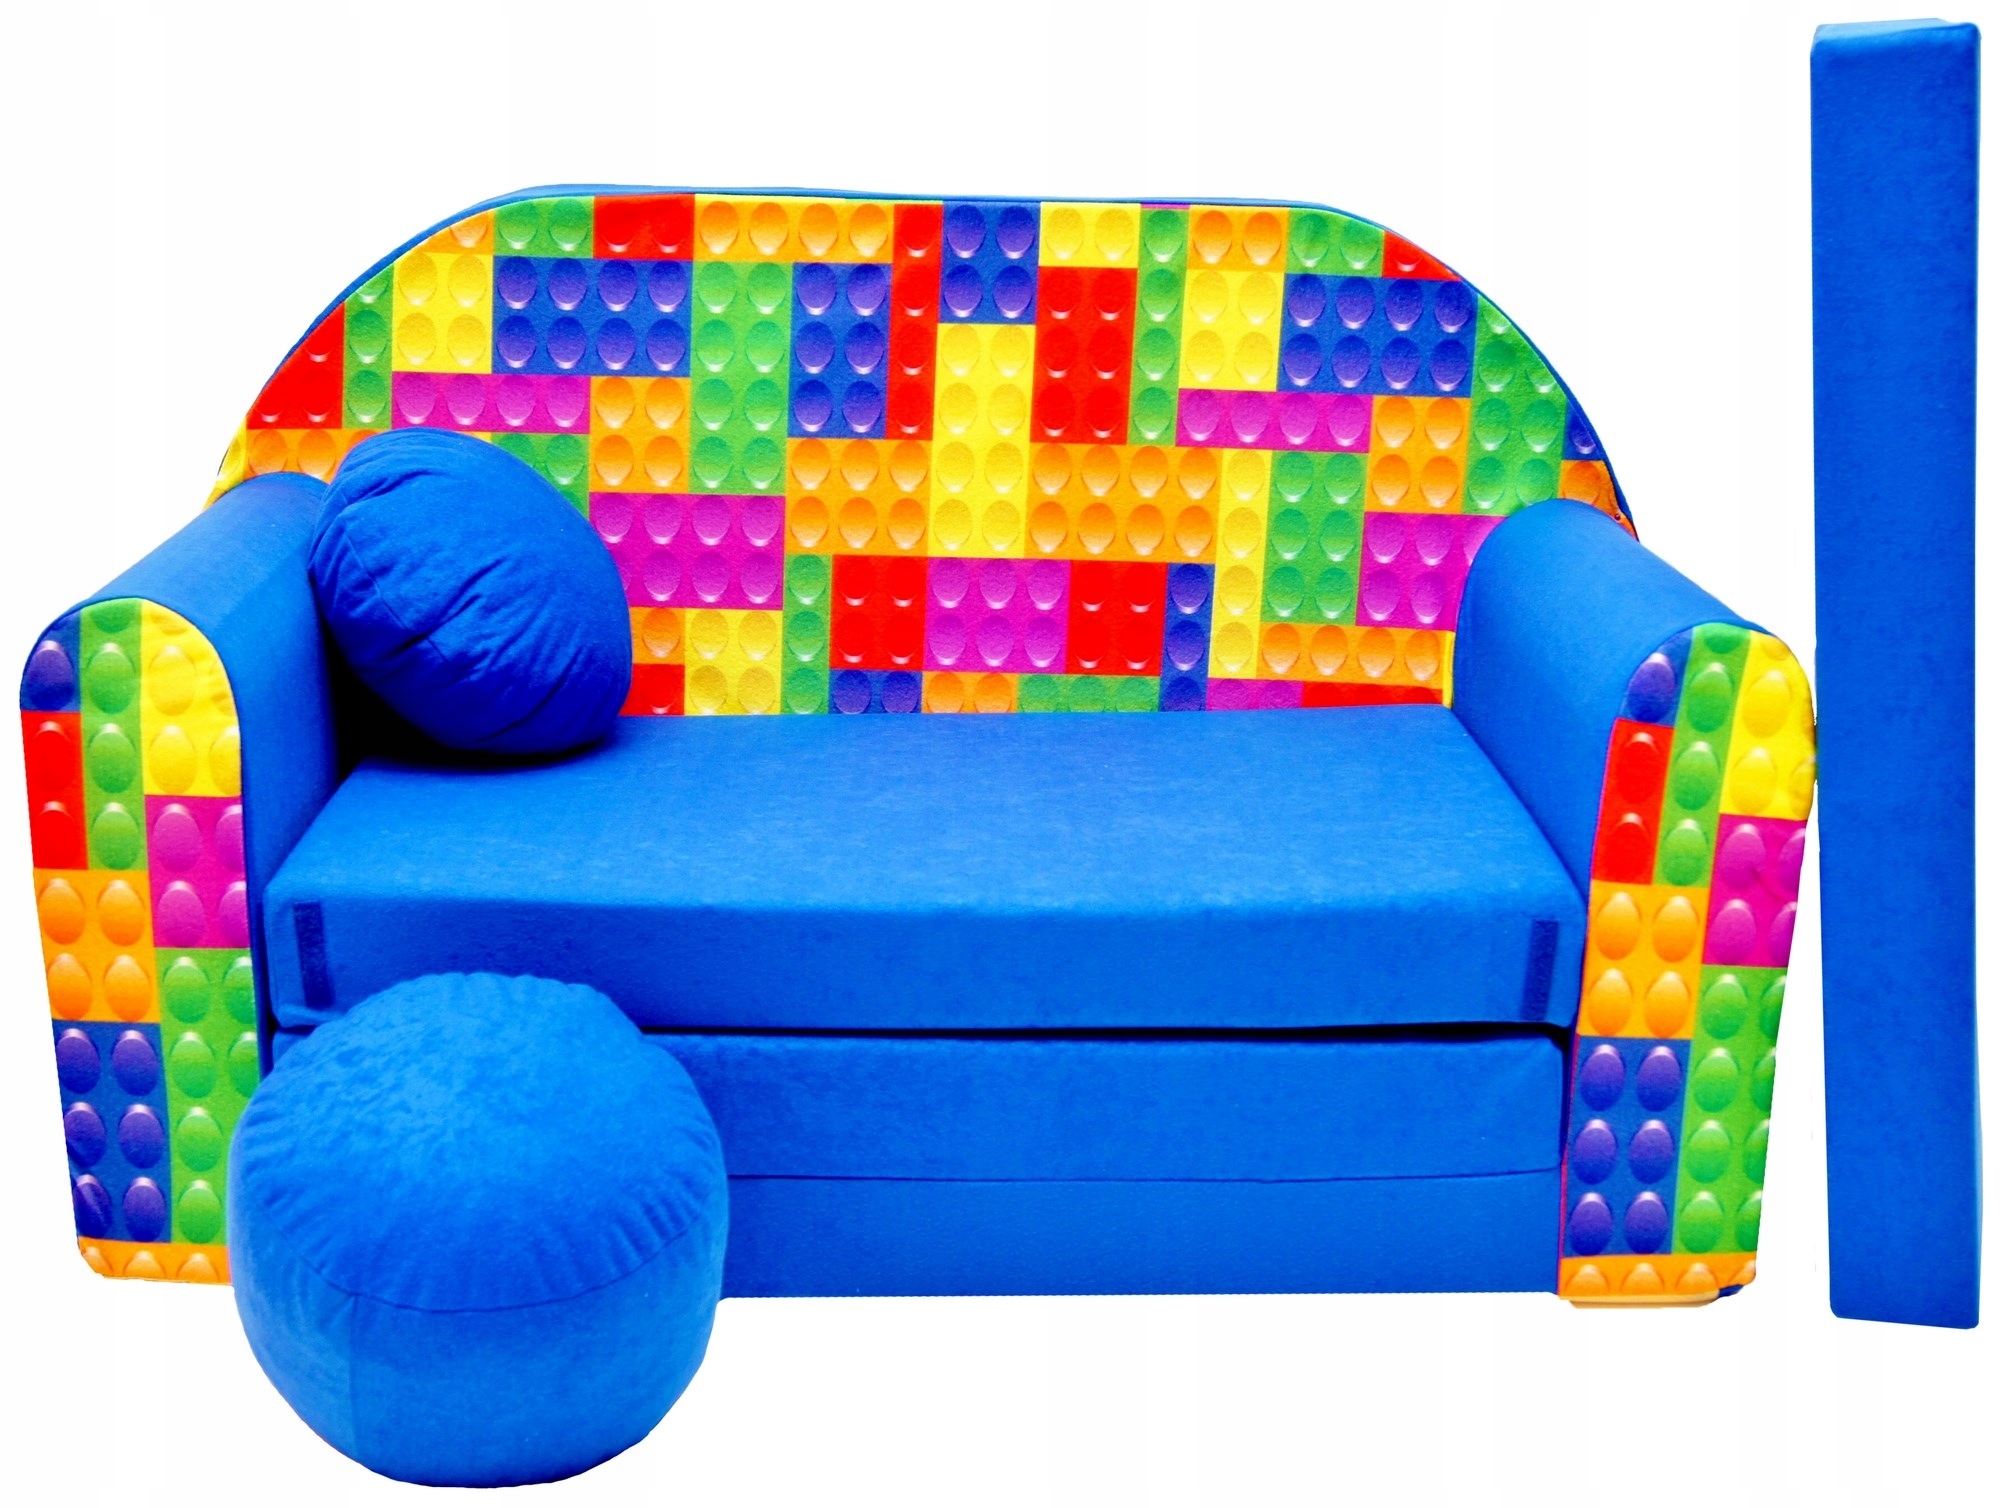 עמידות וסגנון: חומרים איכותיים מבטיחים אריכות ימים בספות וכורסאות ילדים